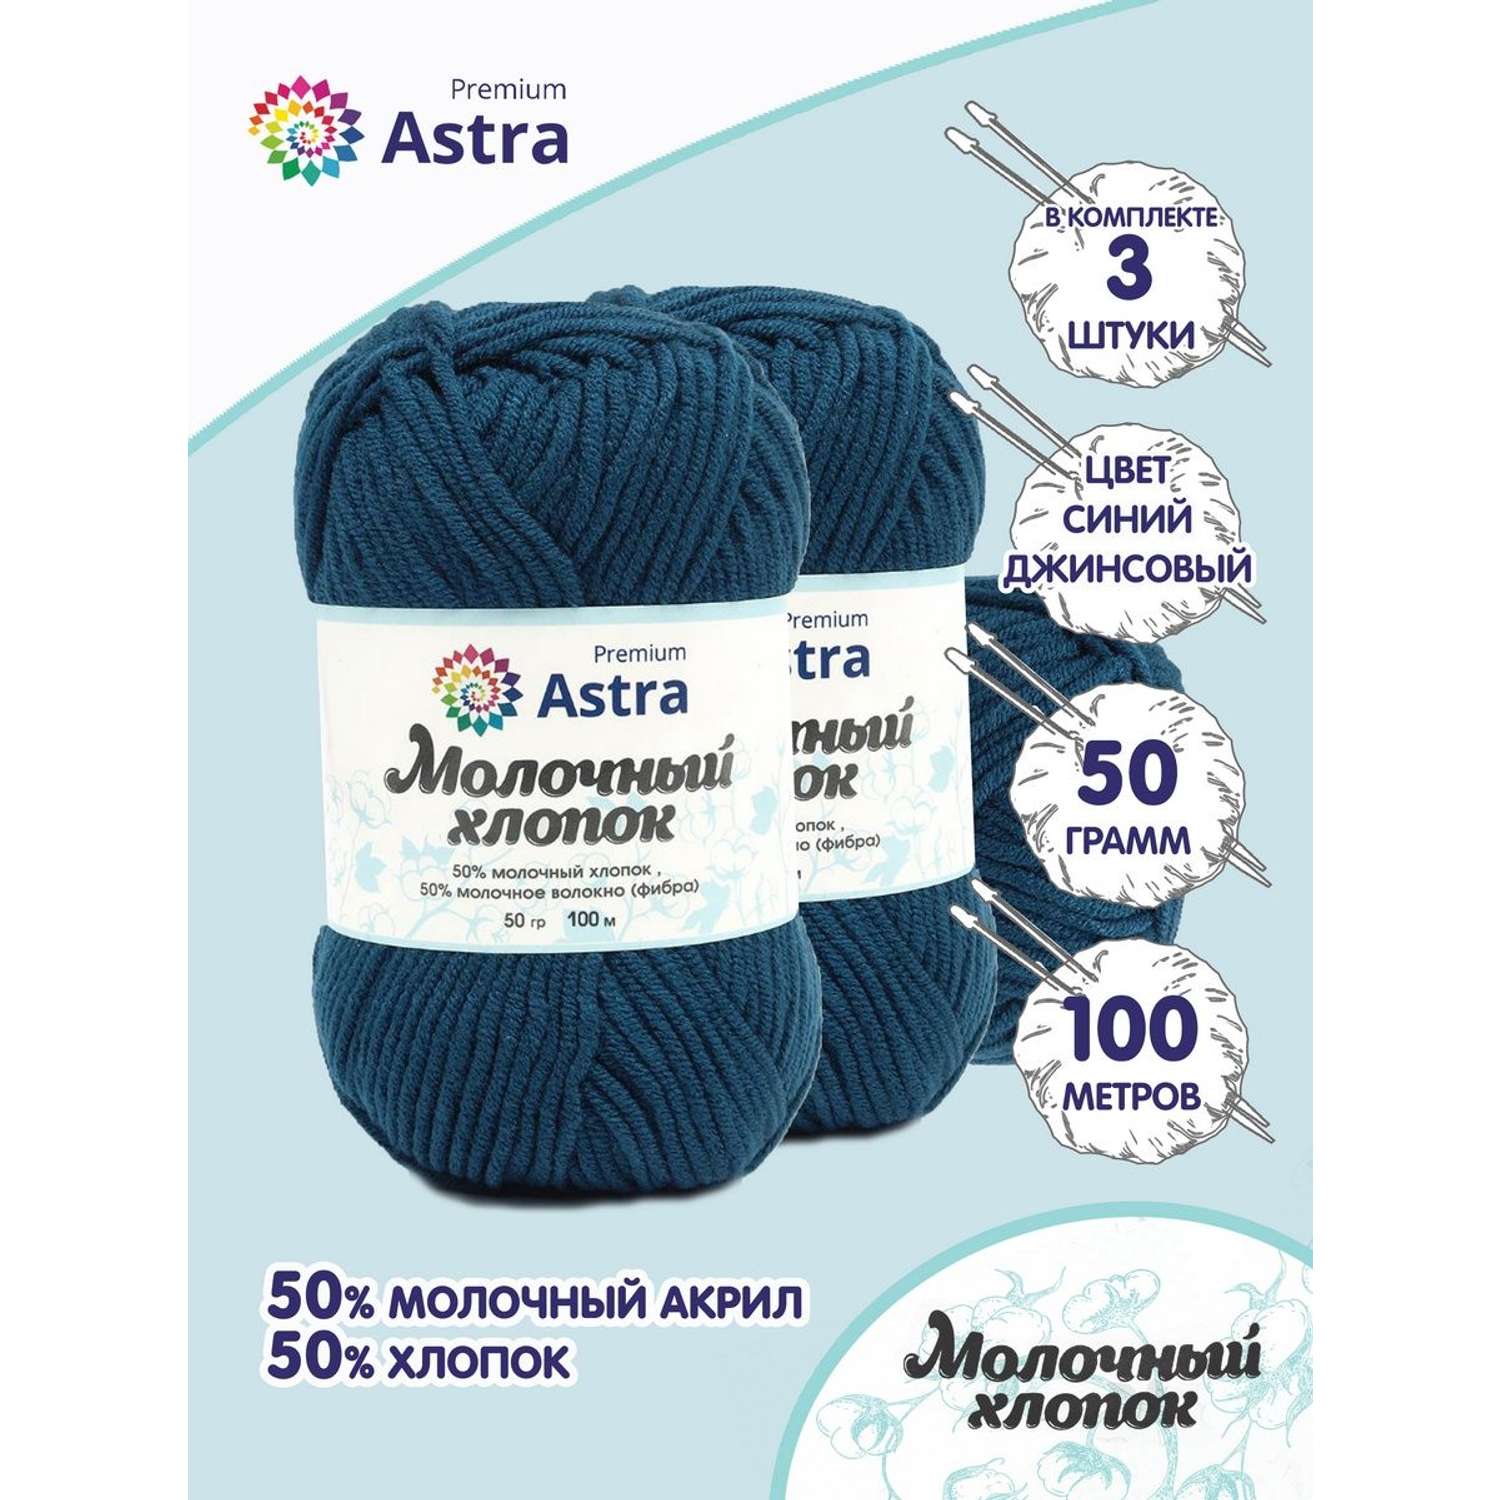 Пряжа для вязания Astra Premium milk cotton хлопок акрил 50 гр 100 м 60 синий джинсовый 3 мотка - фото 1